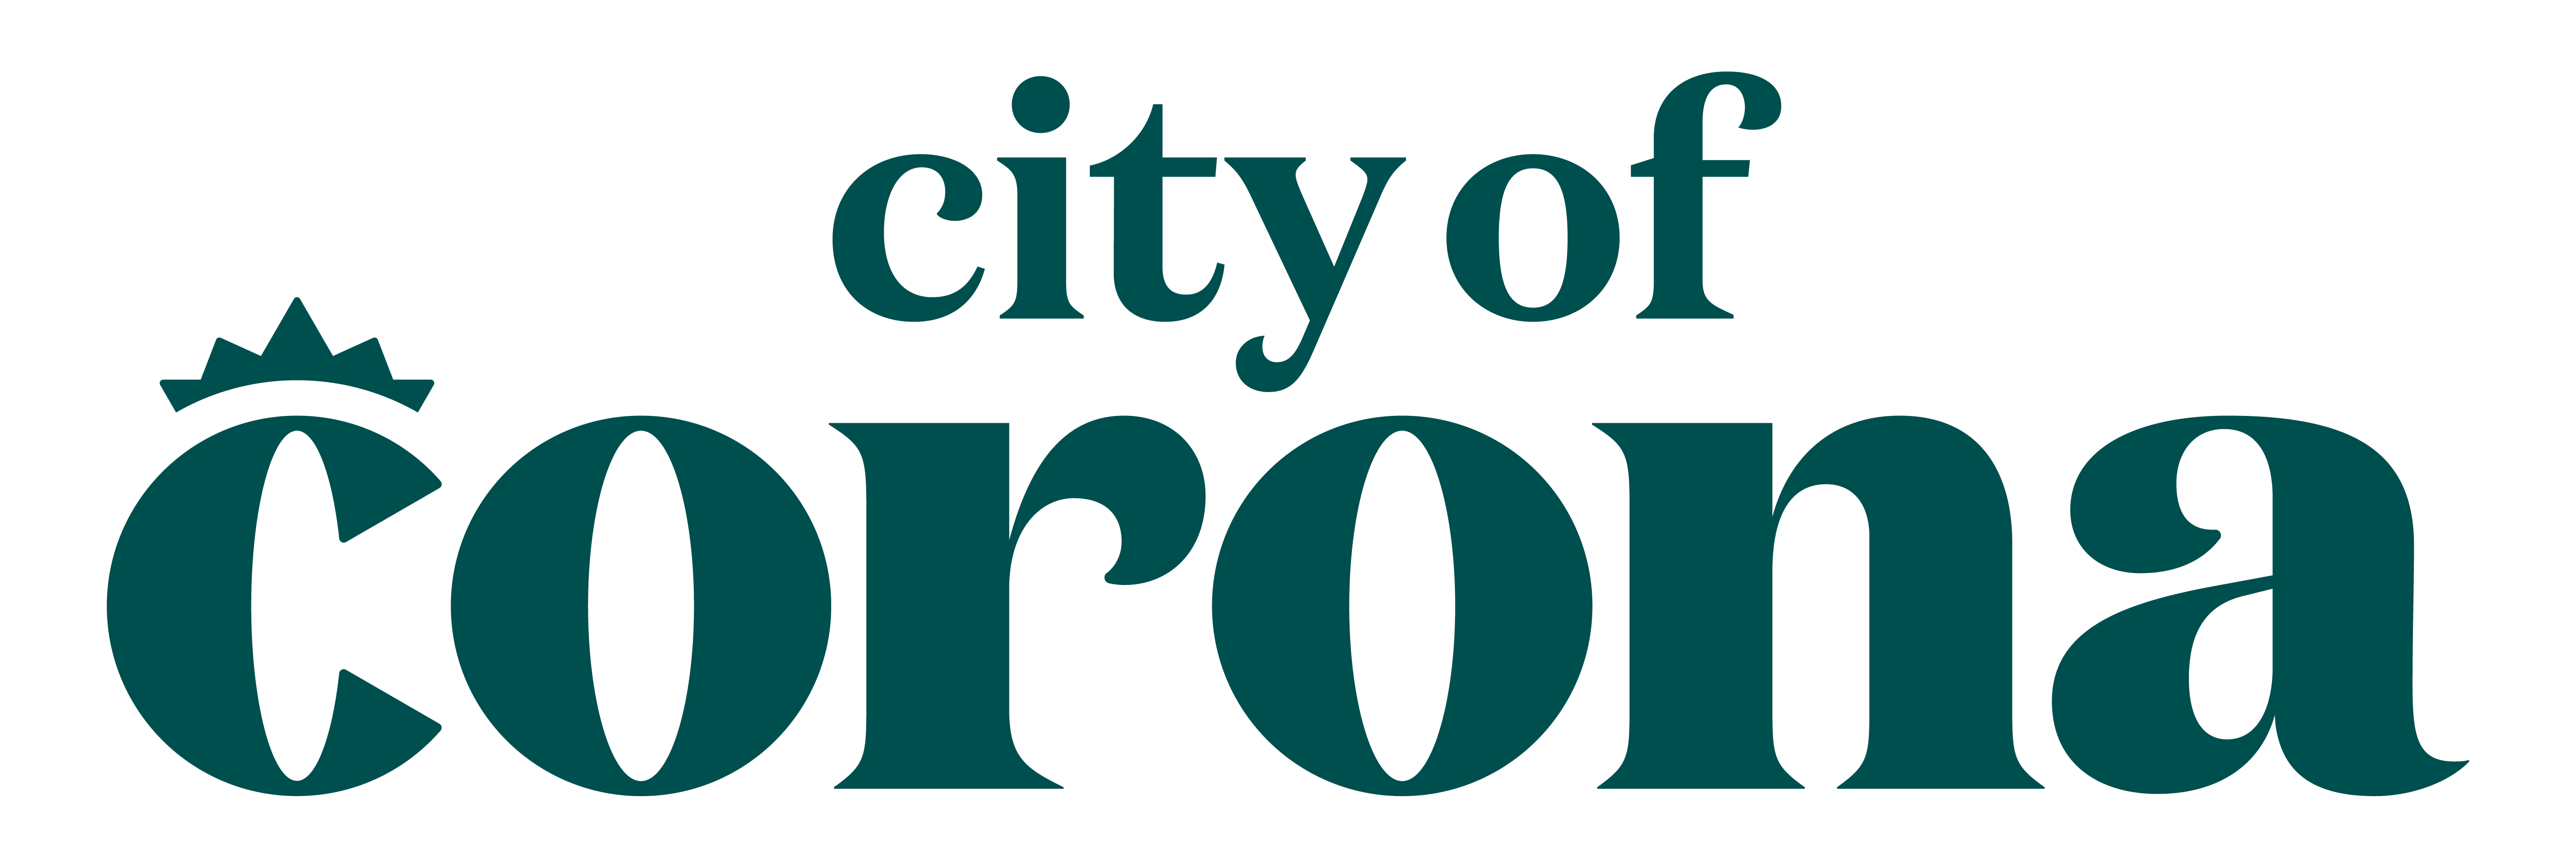 Corona Public Library logo